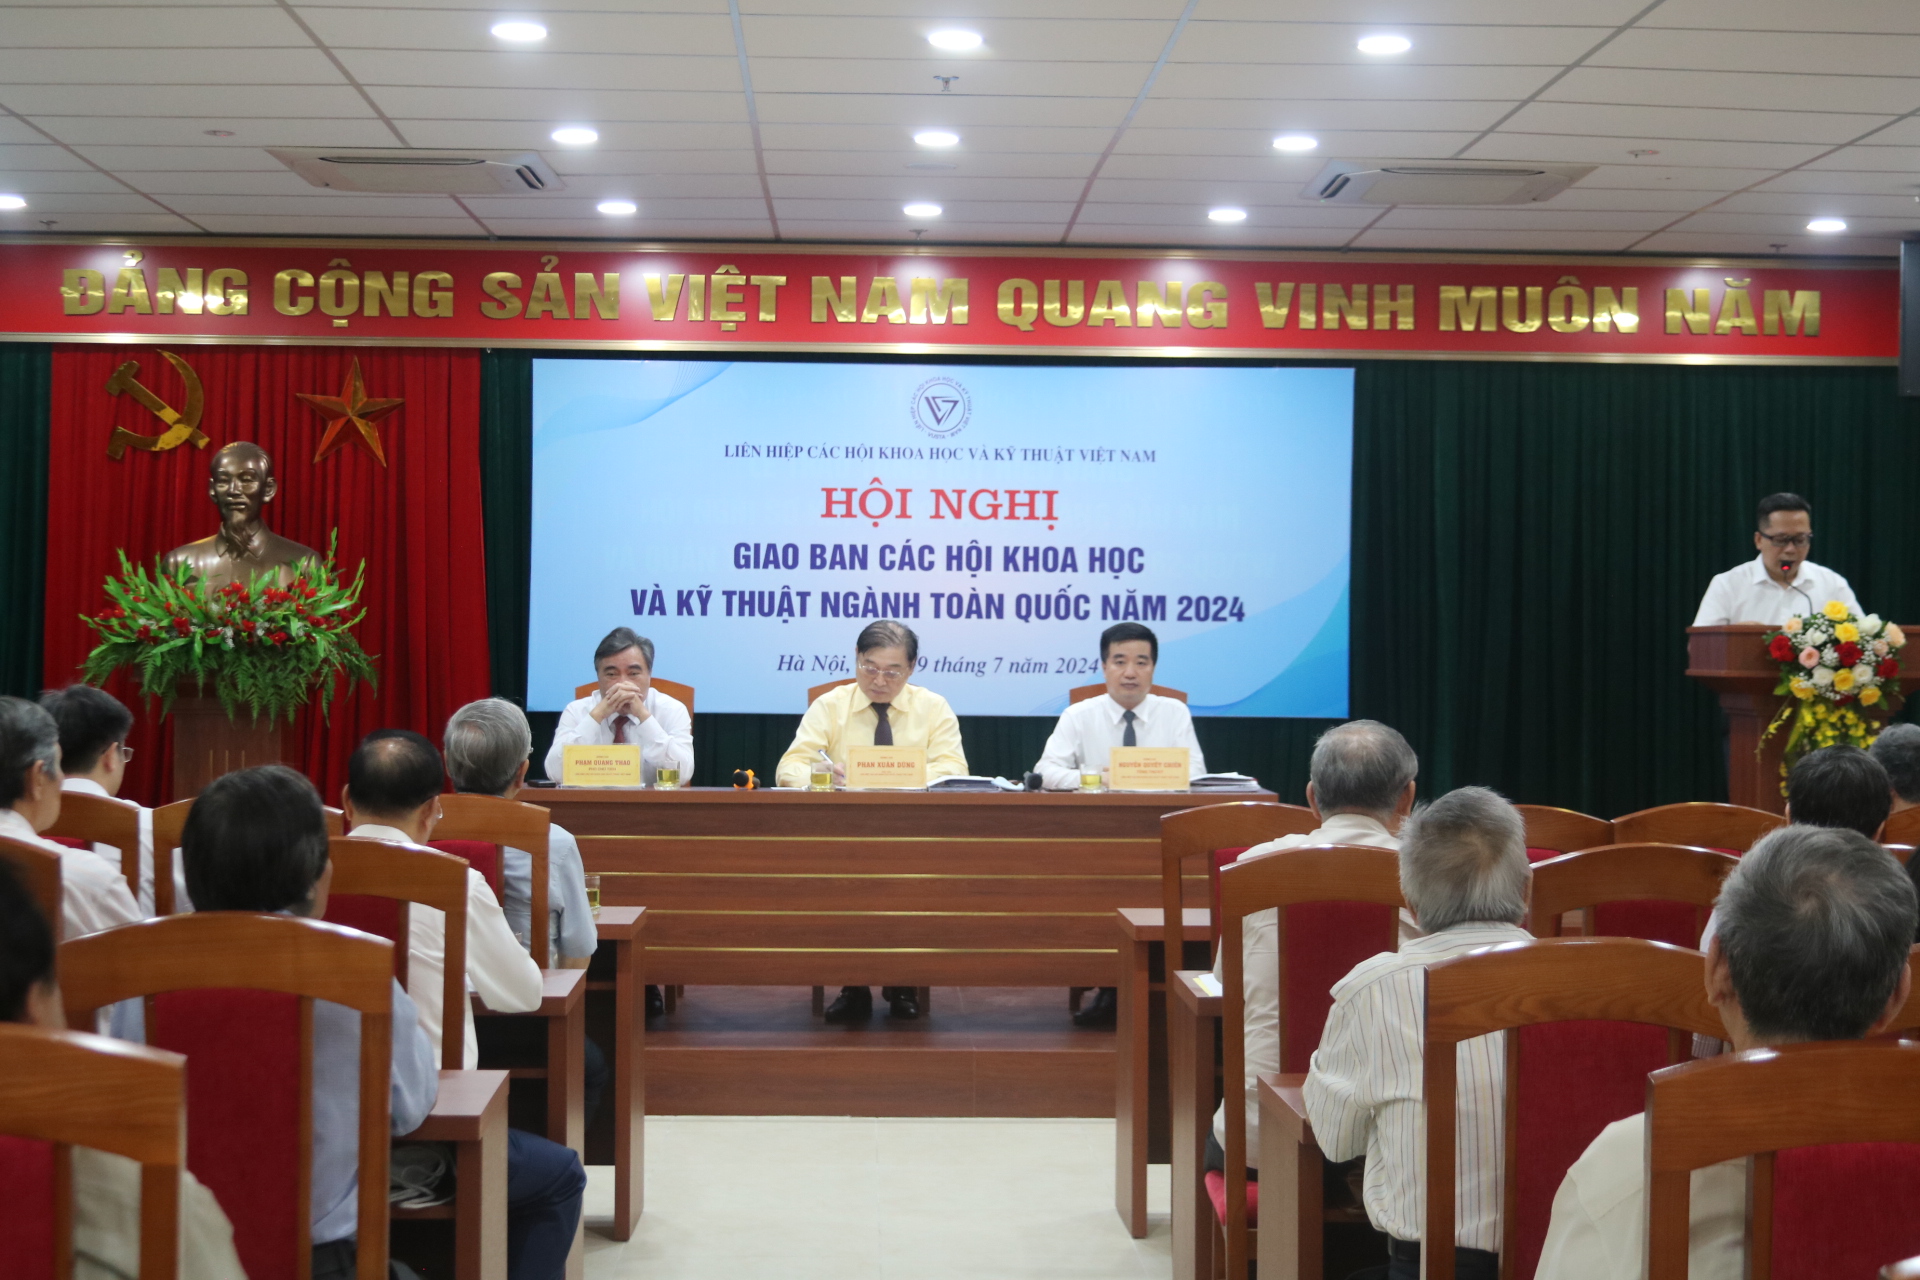 Liên hiệp các KH&KT Việt Nam giao ban các hội, ngành toàn quốc, triển khai nhiệm vụ 6 tháng cuối năm 2024